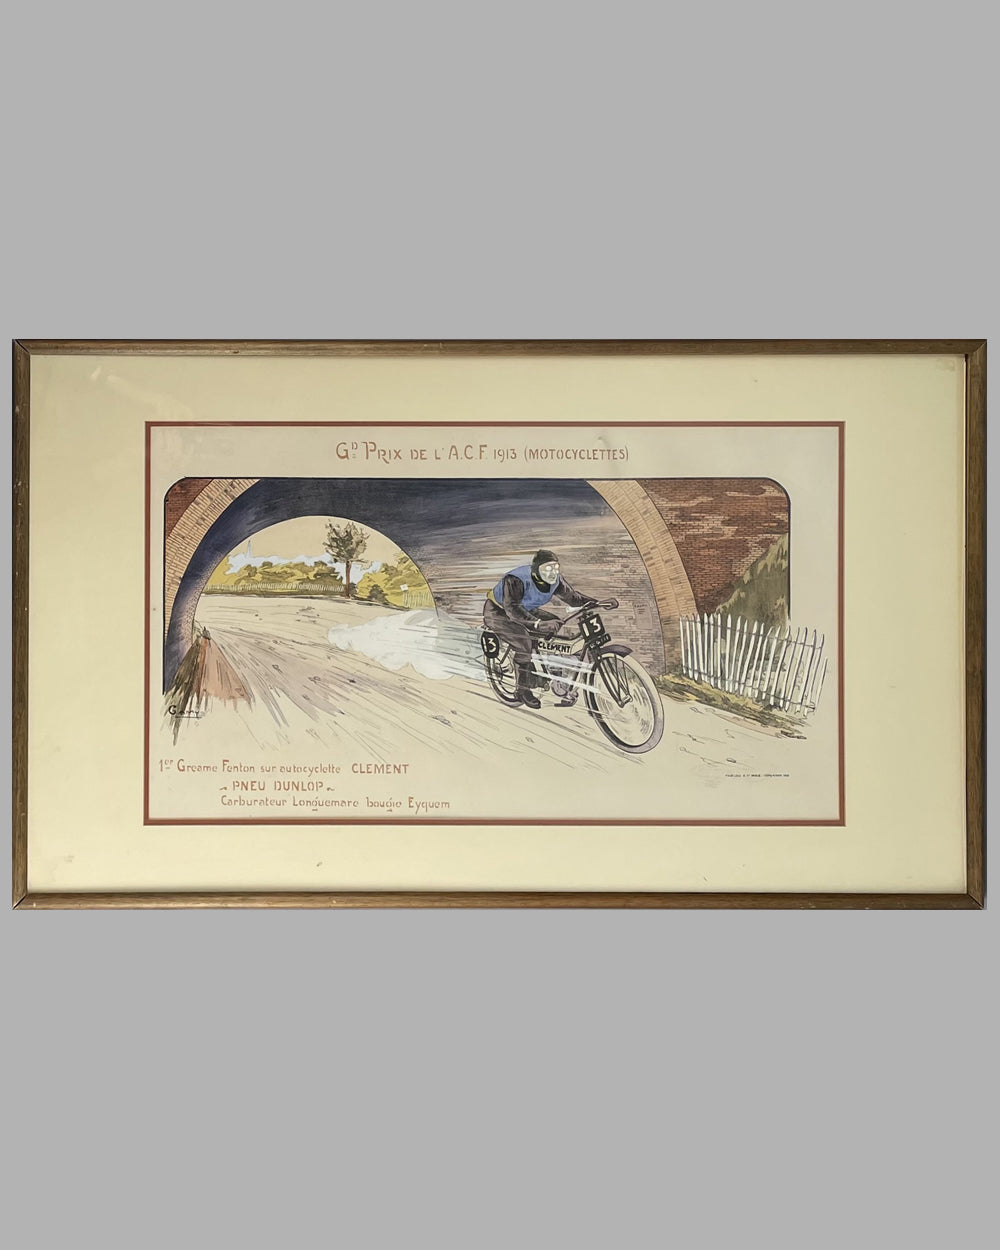 "Grand Prix de l' A.C.F. 1913 (Motocyclettes)" lithograph by Marguerite (Gamy) Montaut